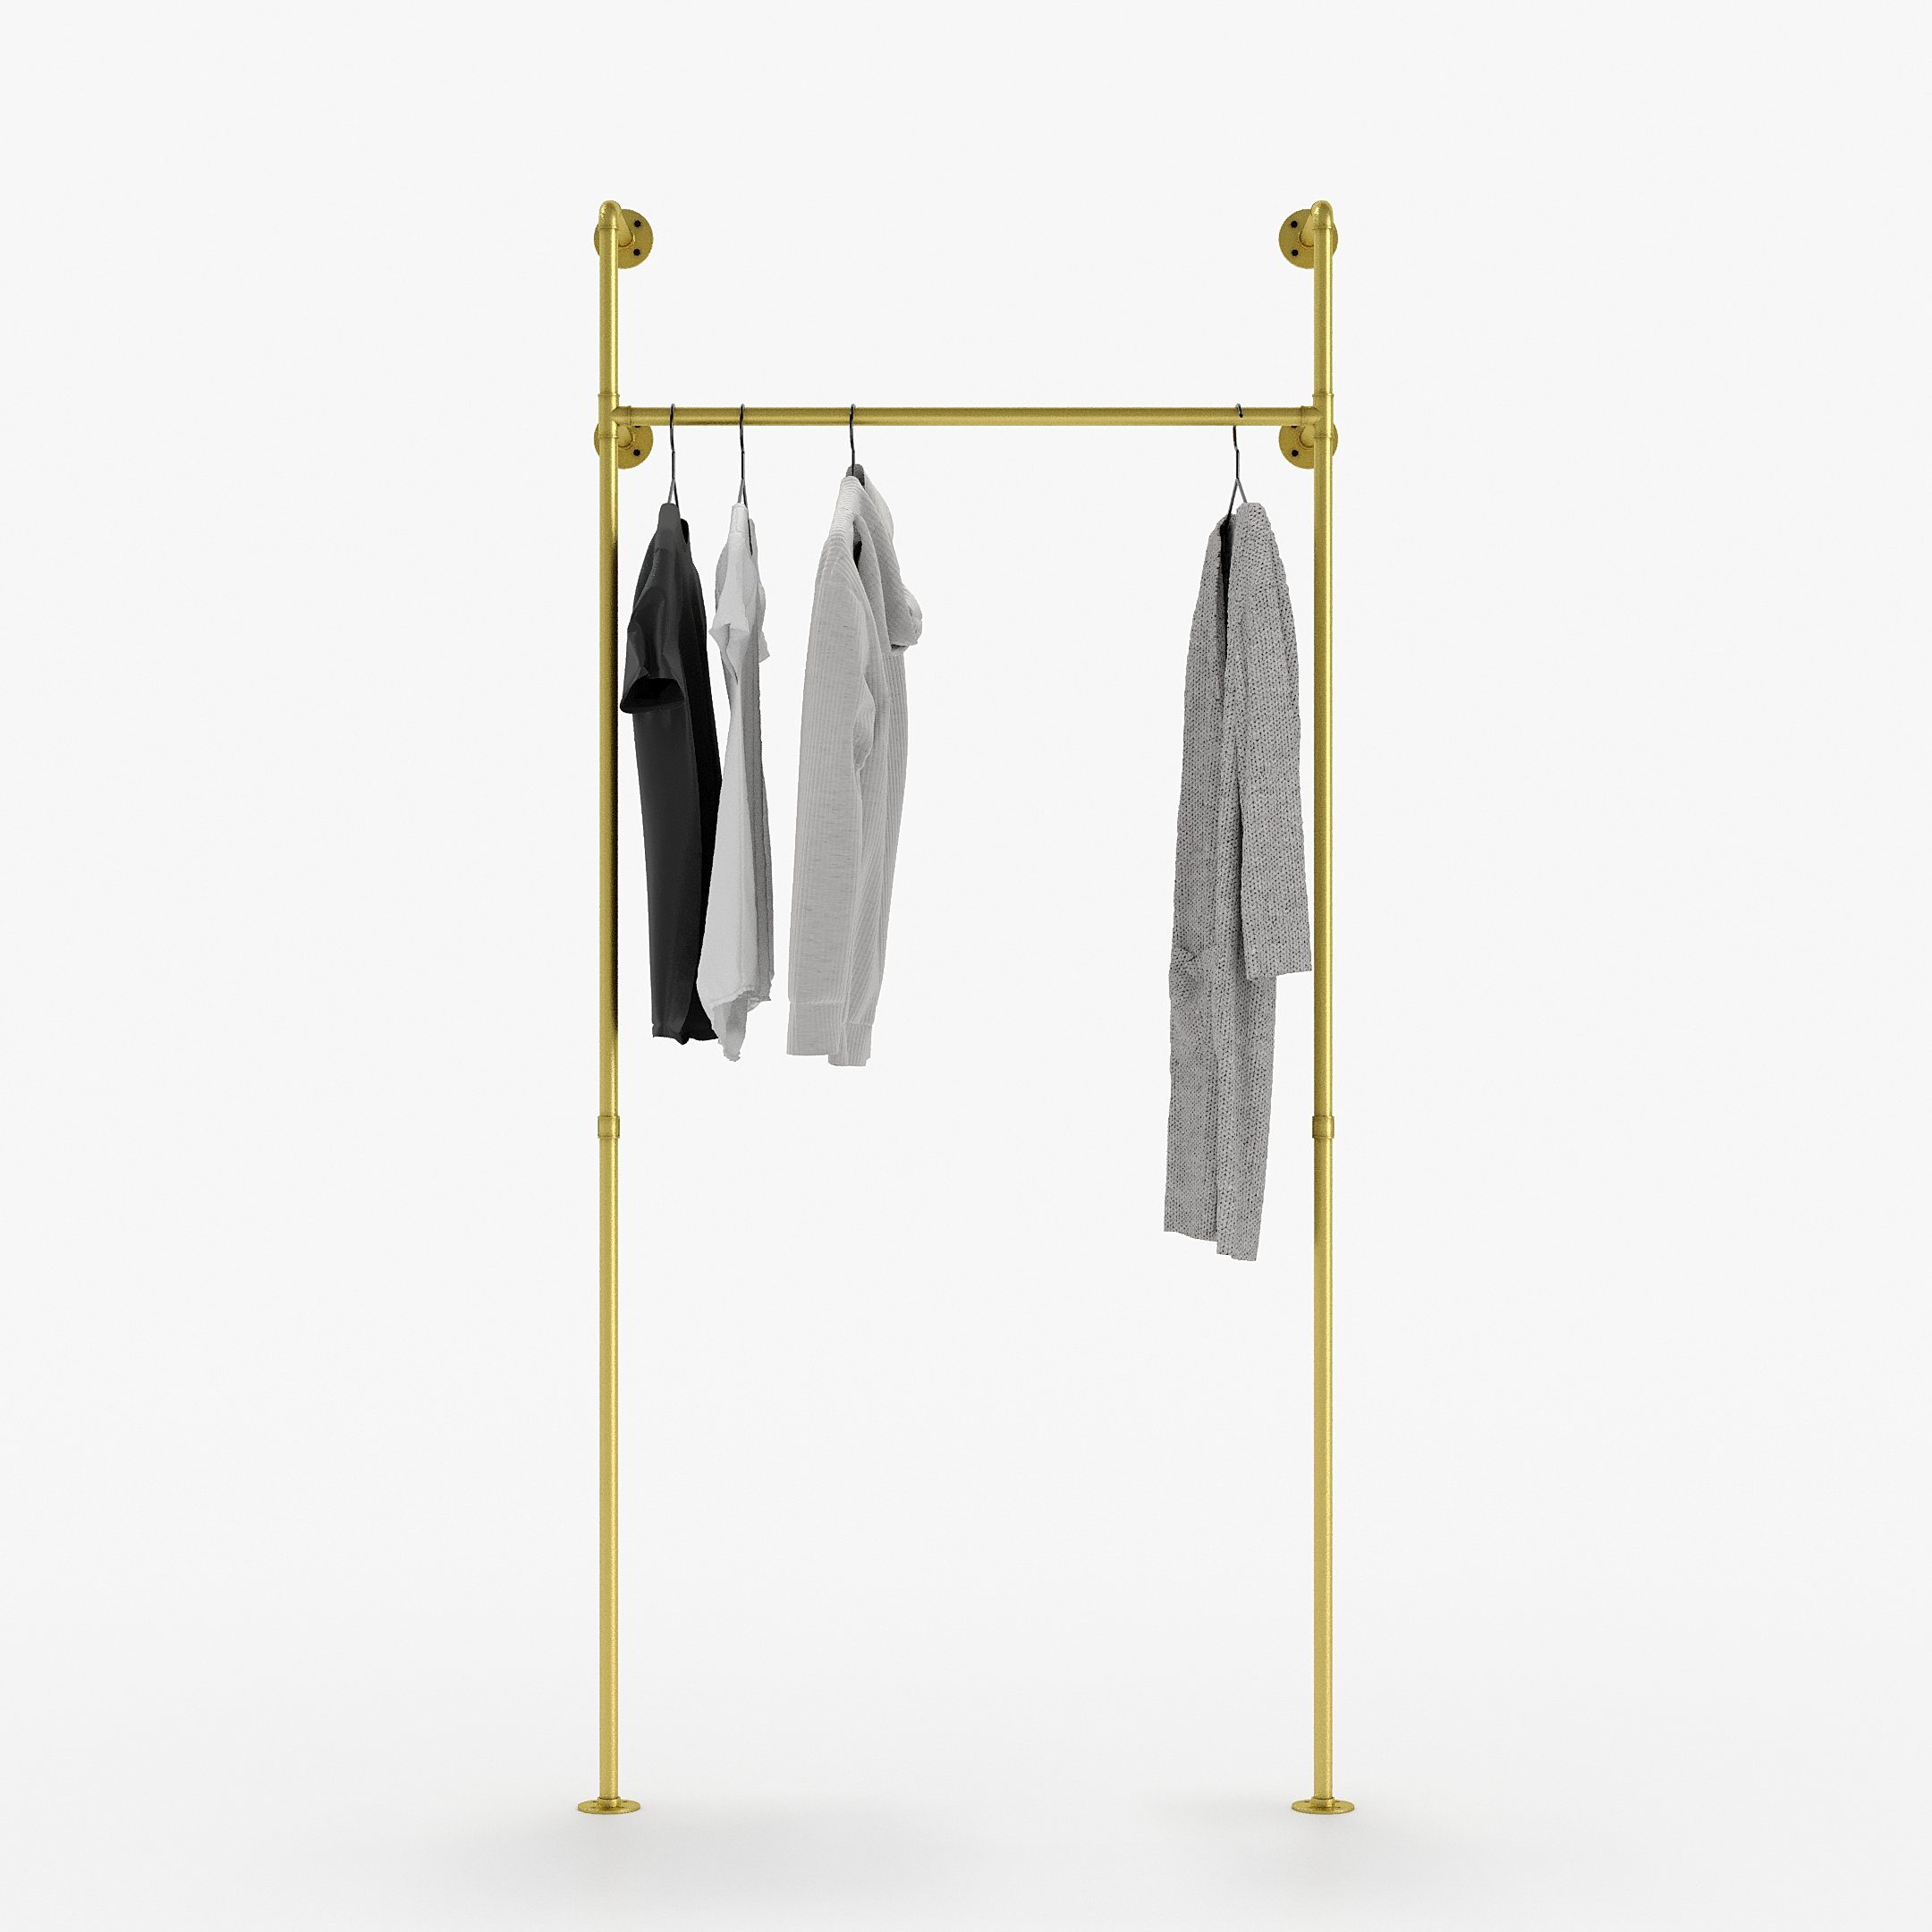 Industrie Kleiderständer goldfarben design Wandmontage zur Kleiderschrank Garderobenständer pamo. KIM, Design im offener